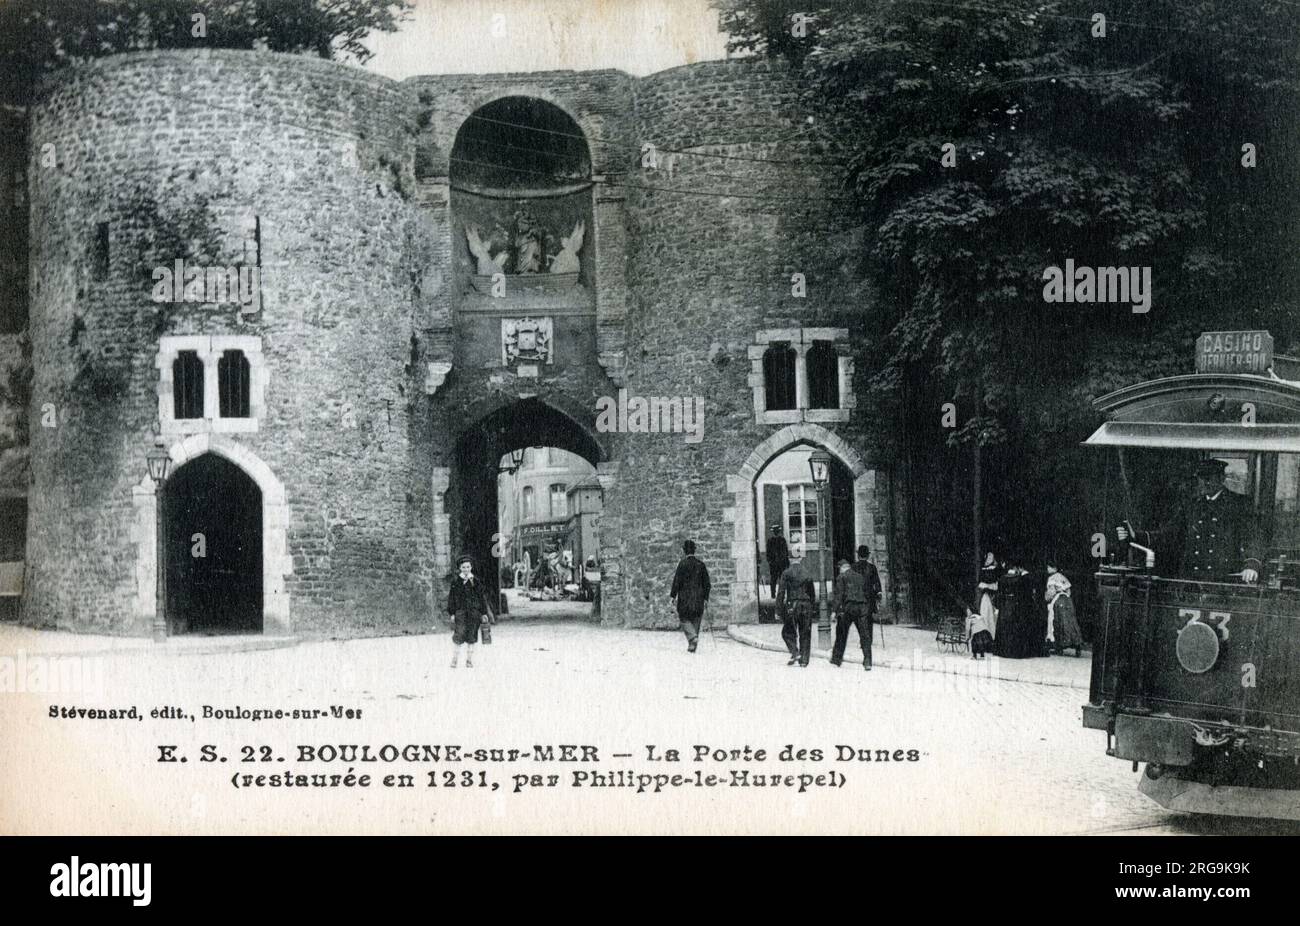 Porte des Dunes, Boulogne-Sur-Mer, Pas-de-Calais, France. A 13th century gate on the Medieval city walls. Stock Photo